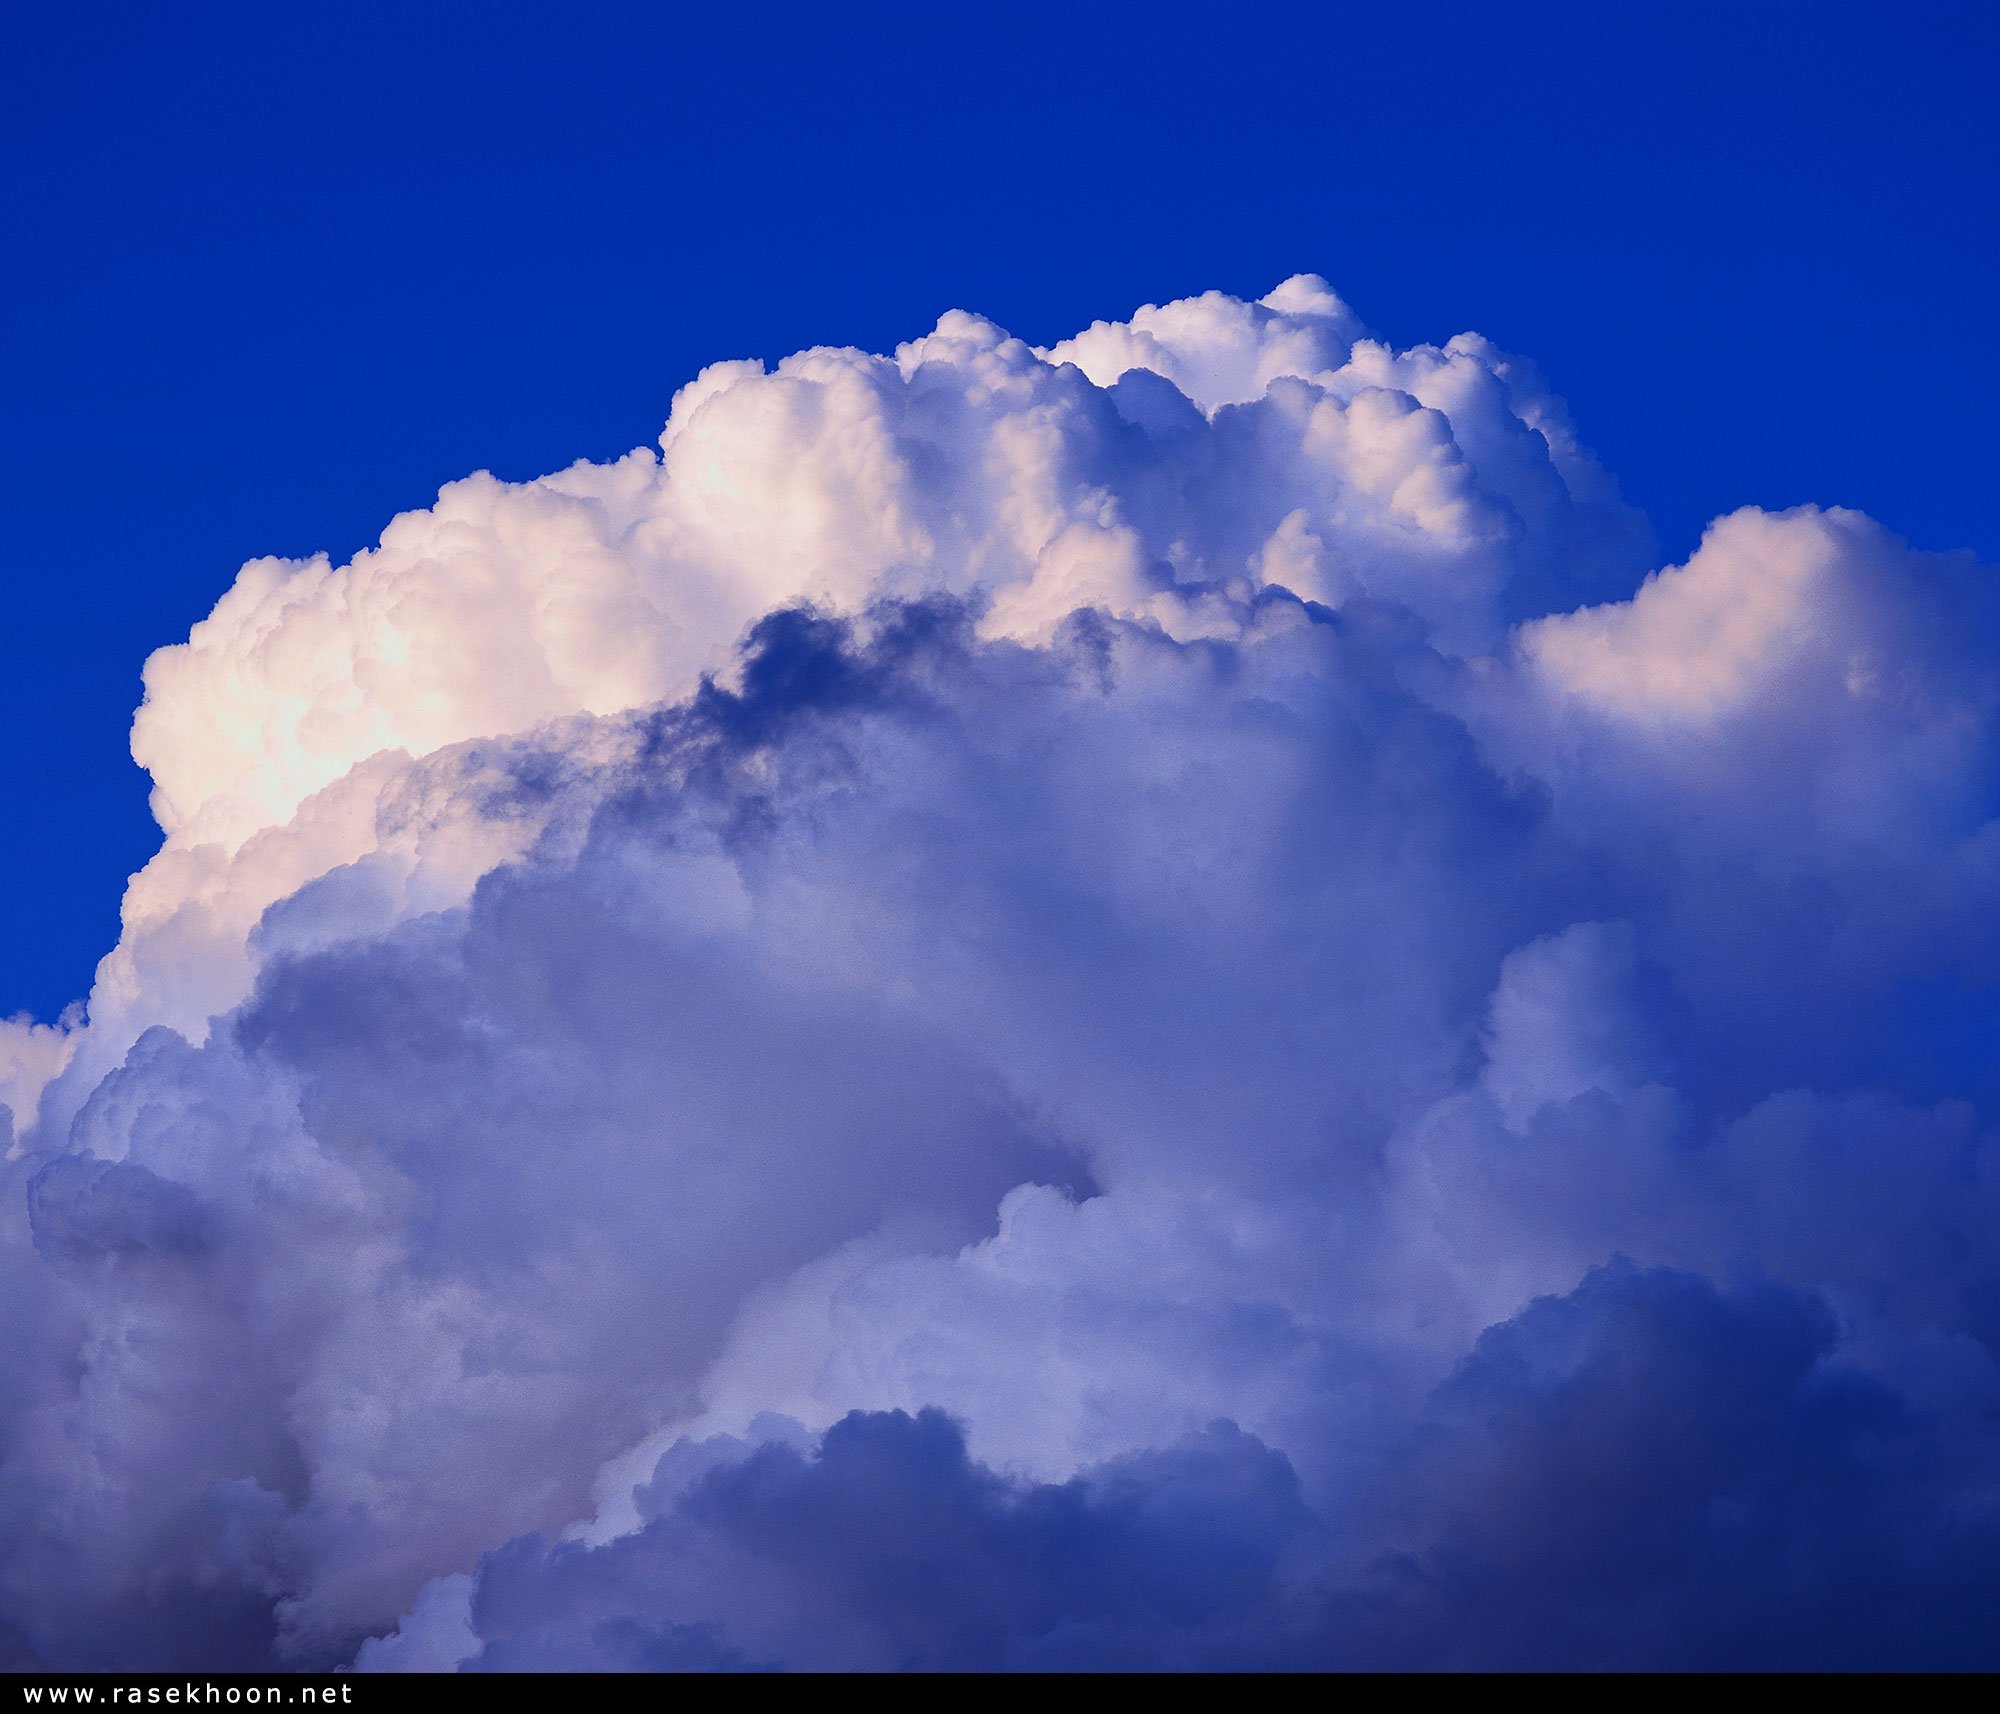 Синий синий над головой. Пушистые облака. Небо с пушистыми облаками. Воздушное облако. Облака на голубом небе.